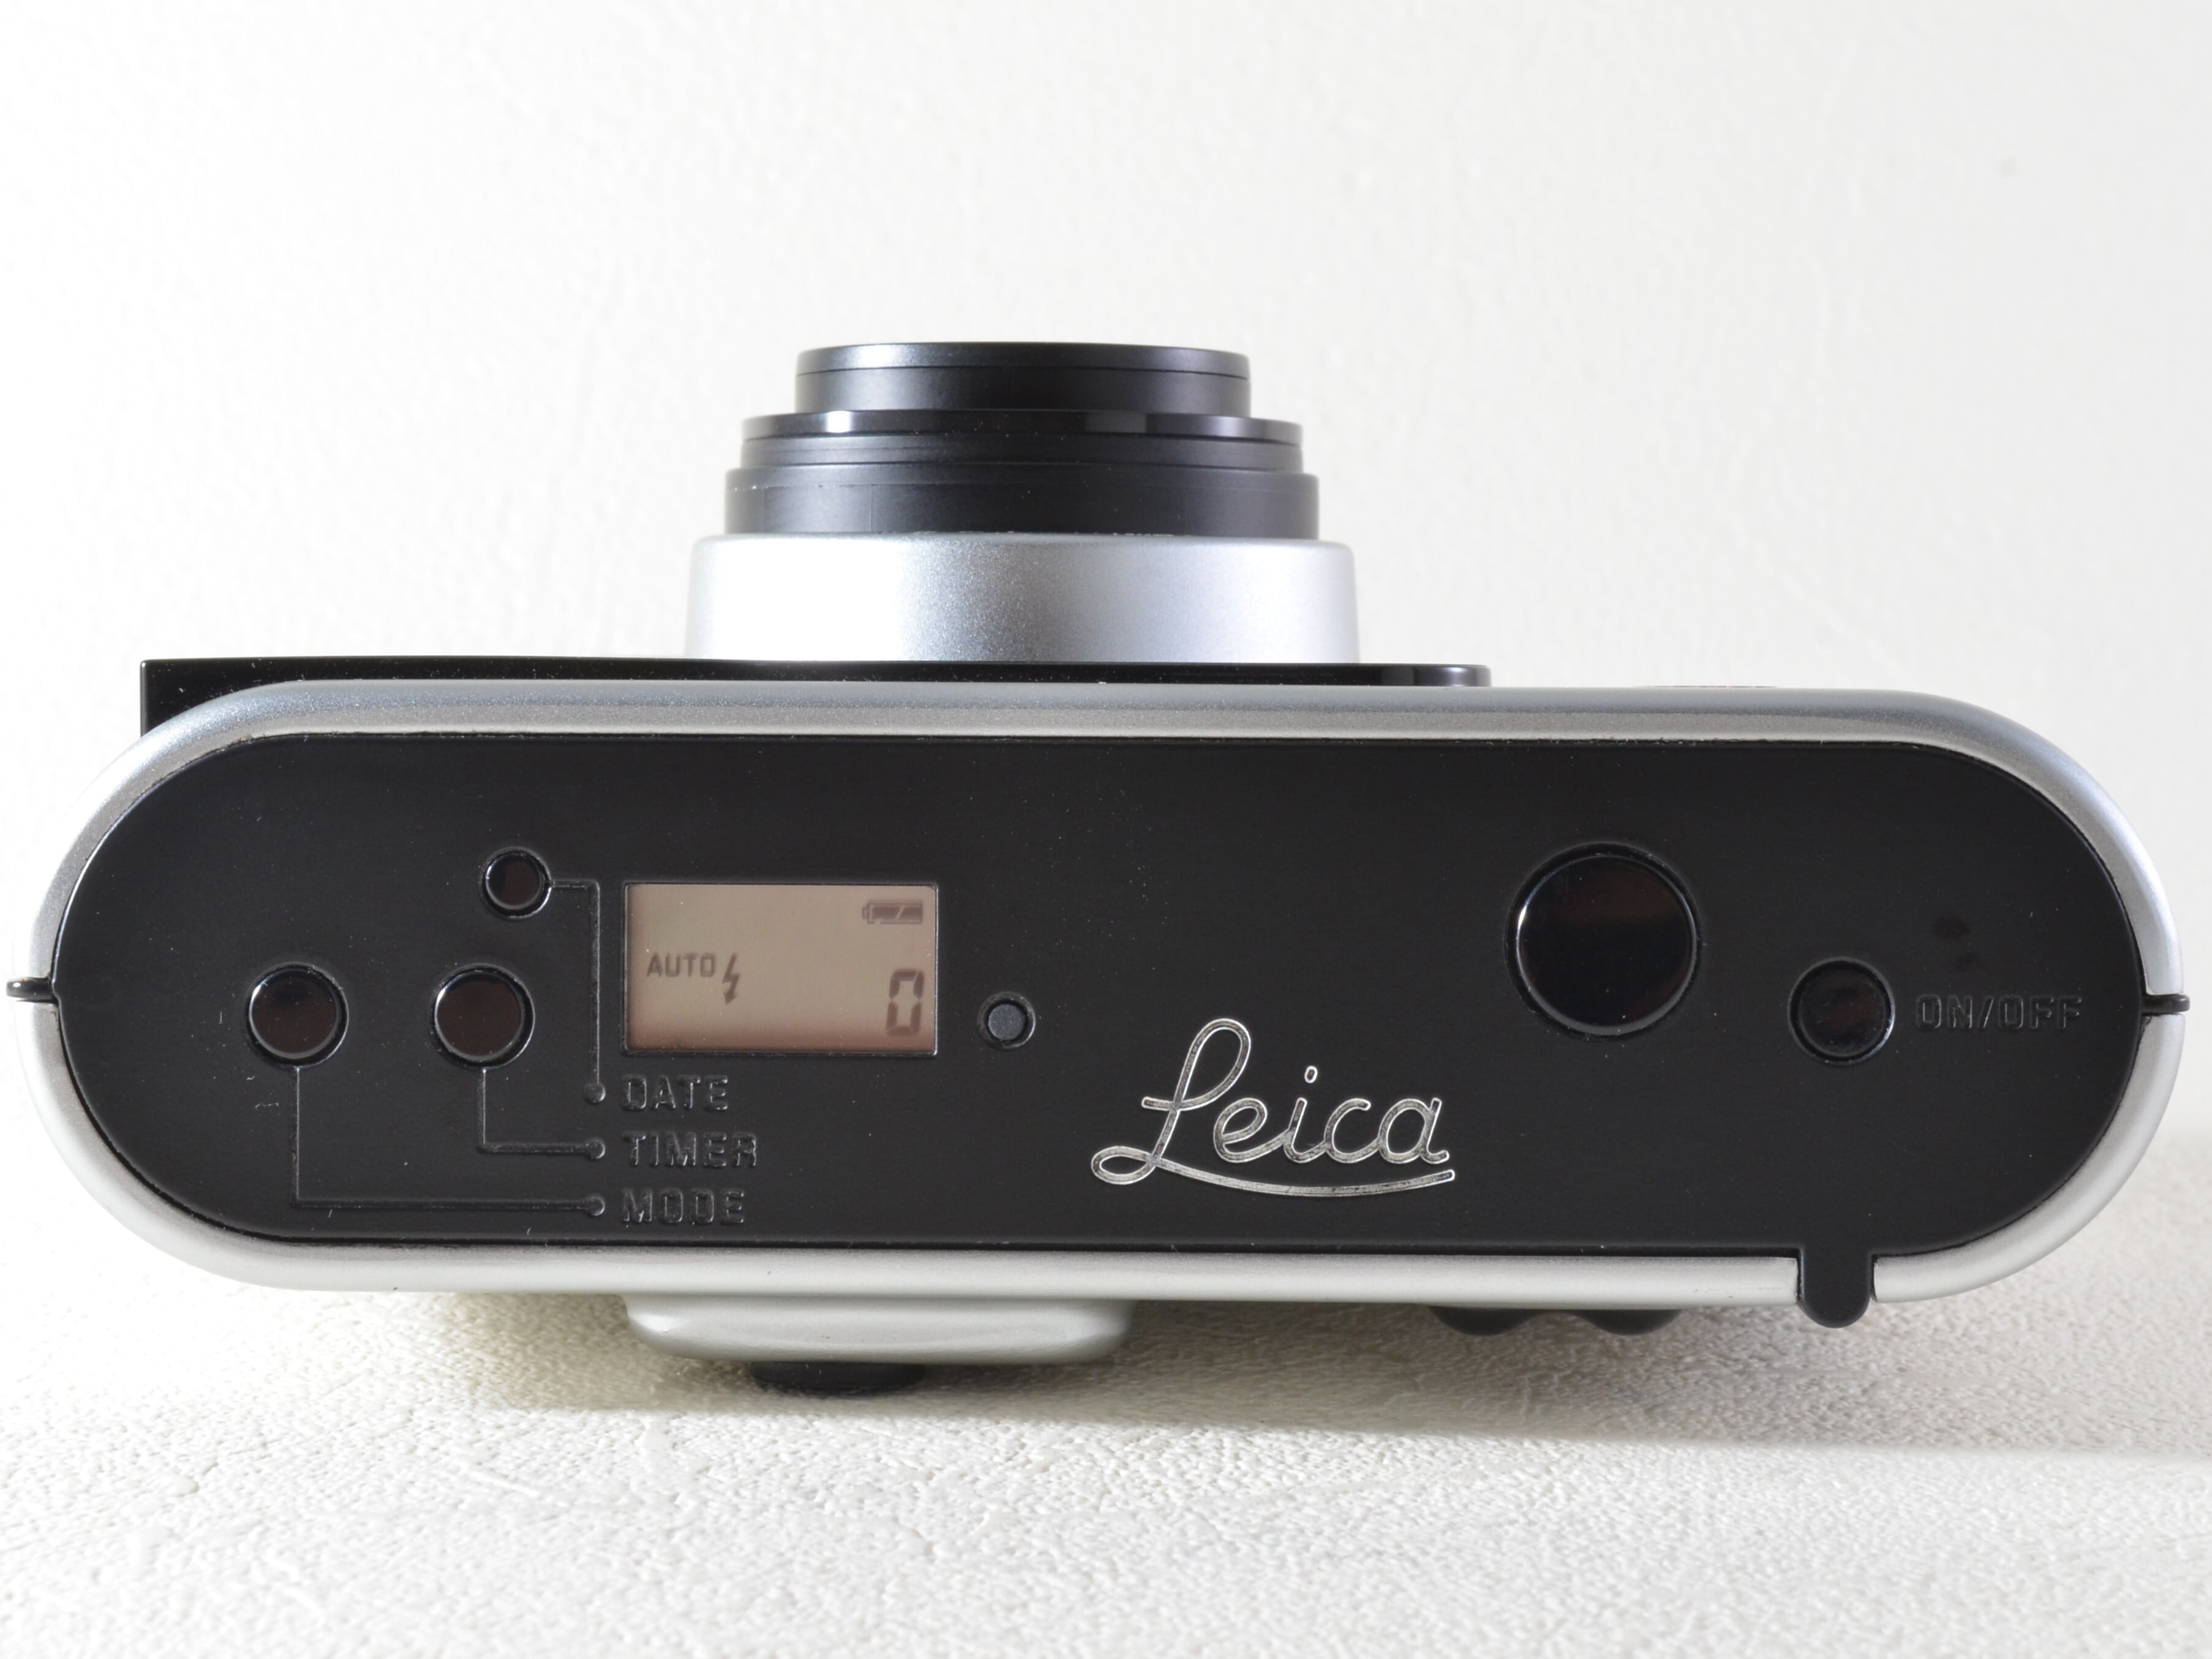 動画あり☆最高峰ライカの賜物】Leica C1 / VARIO ELMAR 38-105mm ASPH